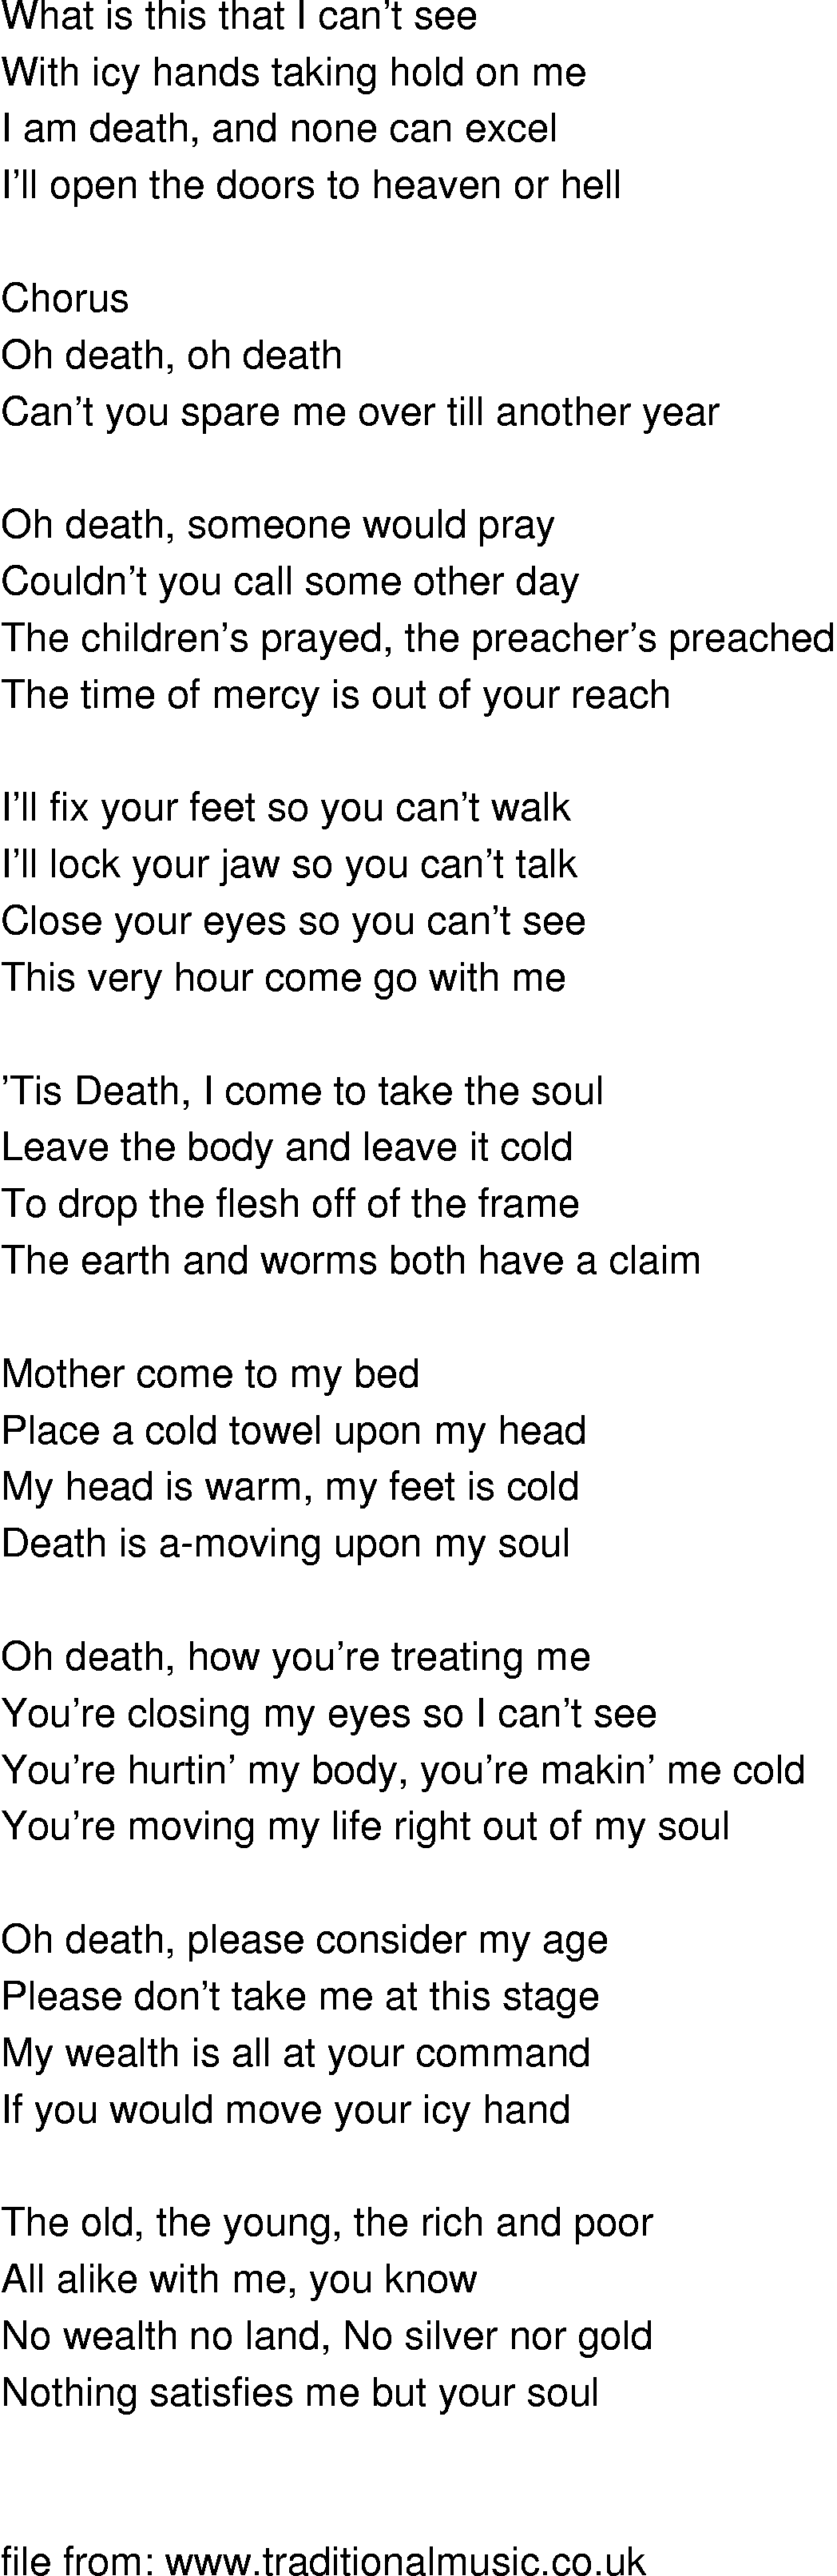 Old-Time (oldtimey) Song Lyrics - oh death